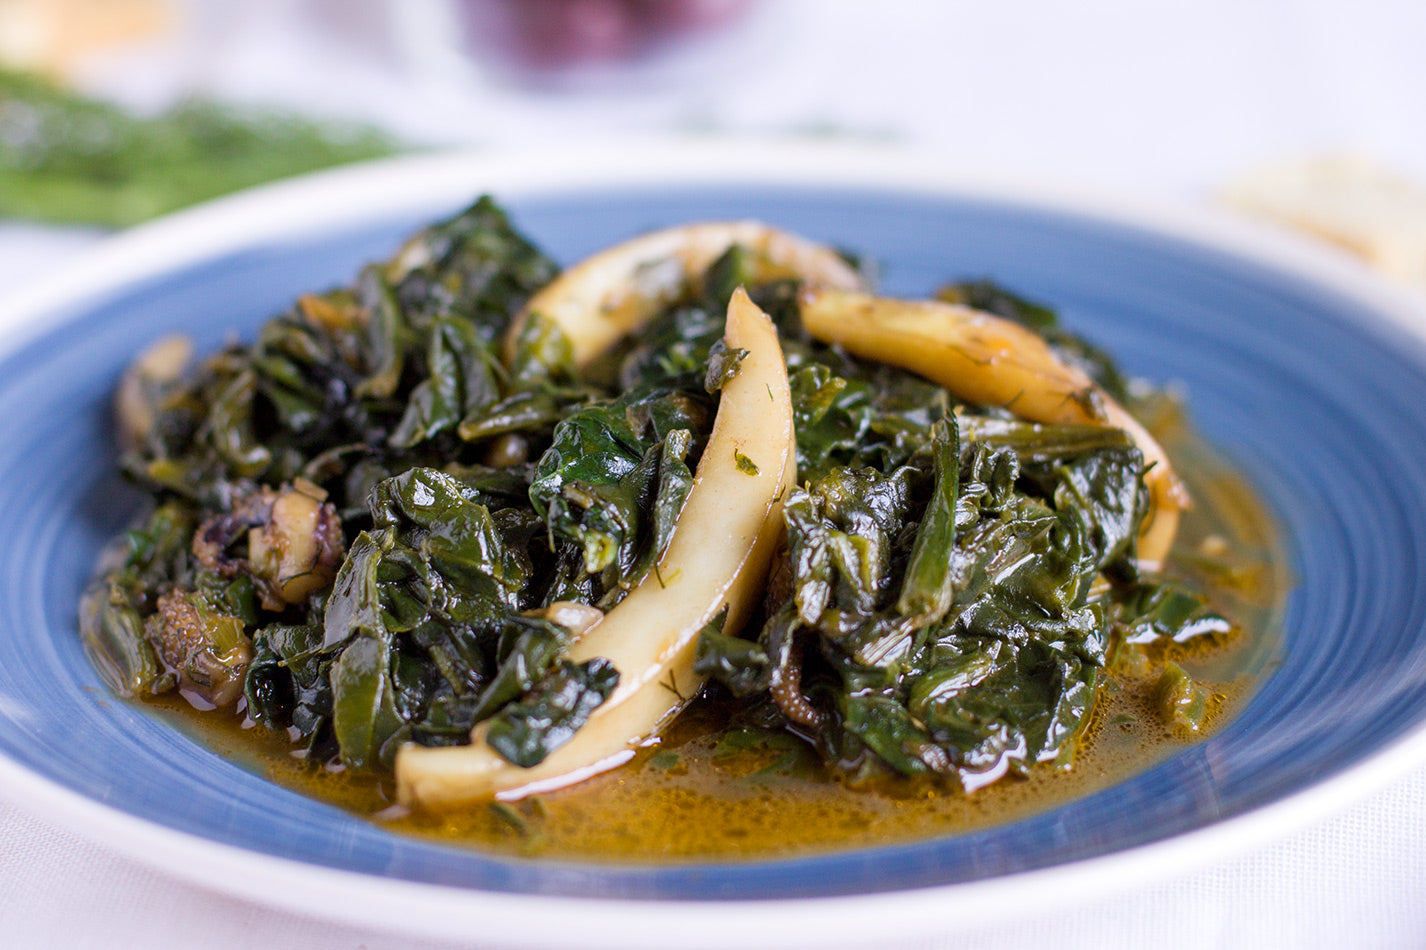 Seppie con spinaci, sapori tradizionali da Paros  